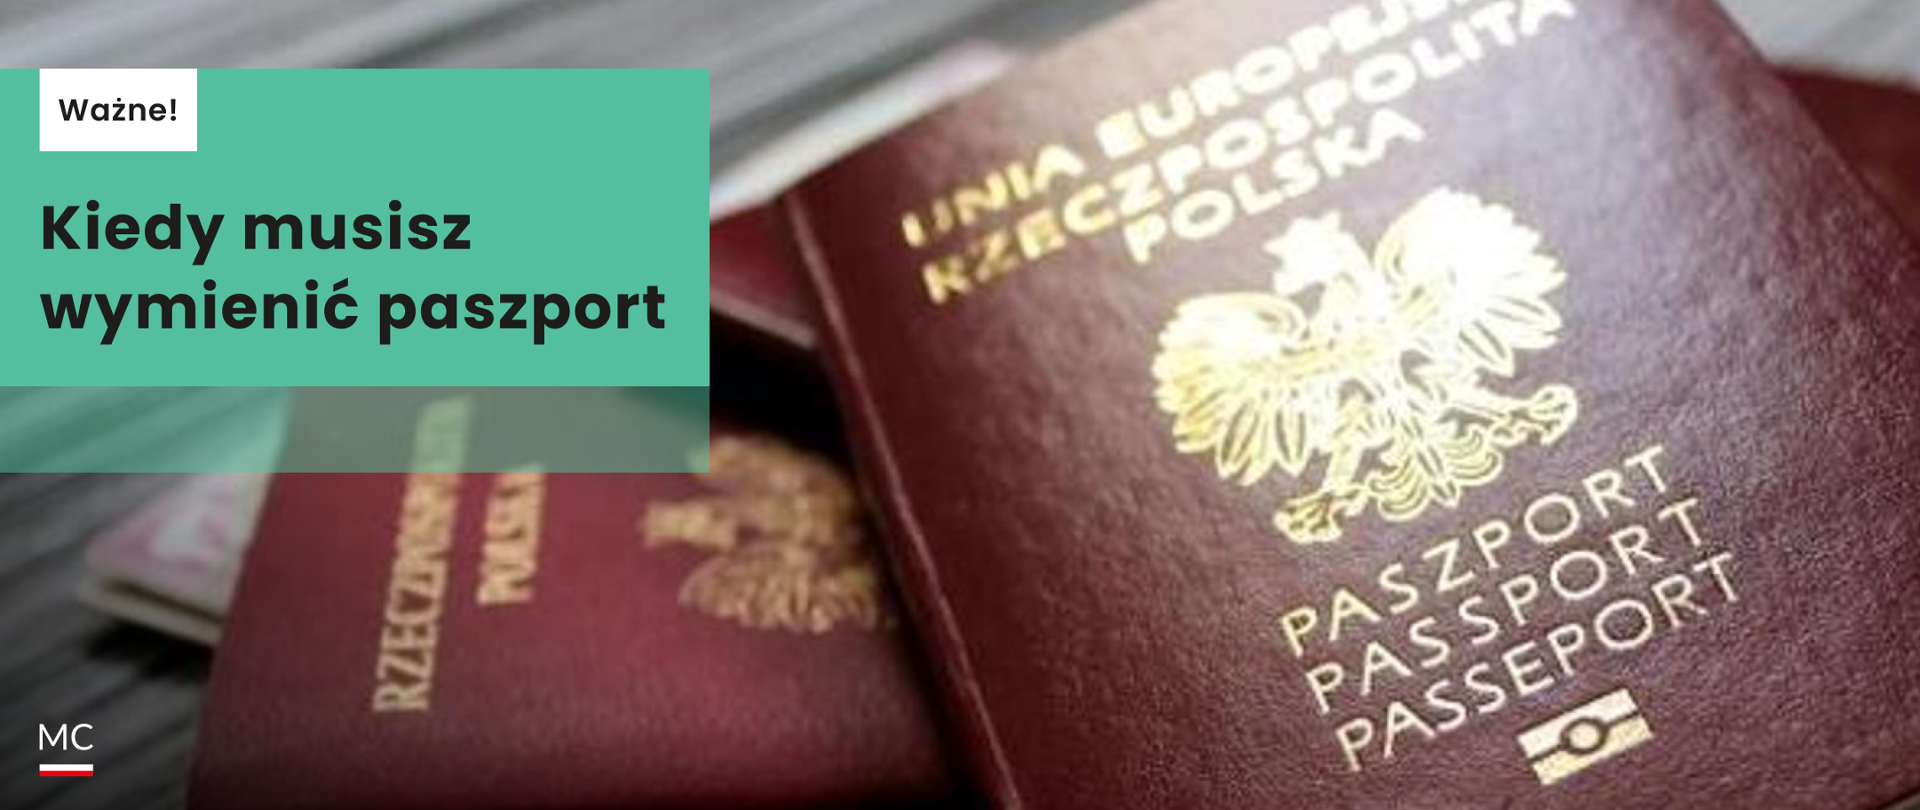 Wymień paszport